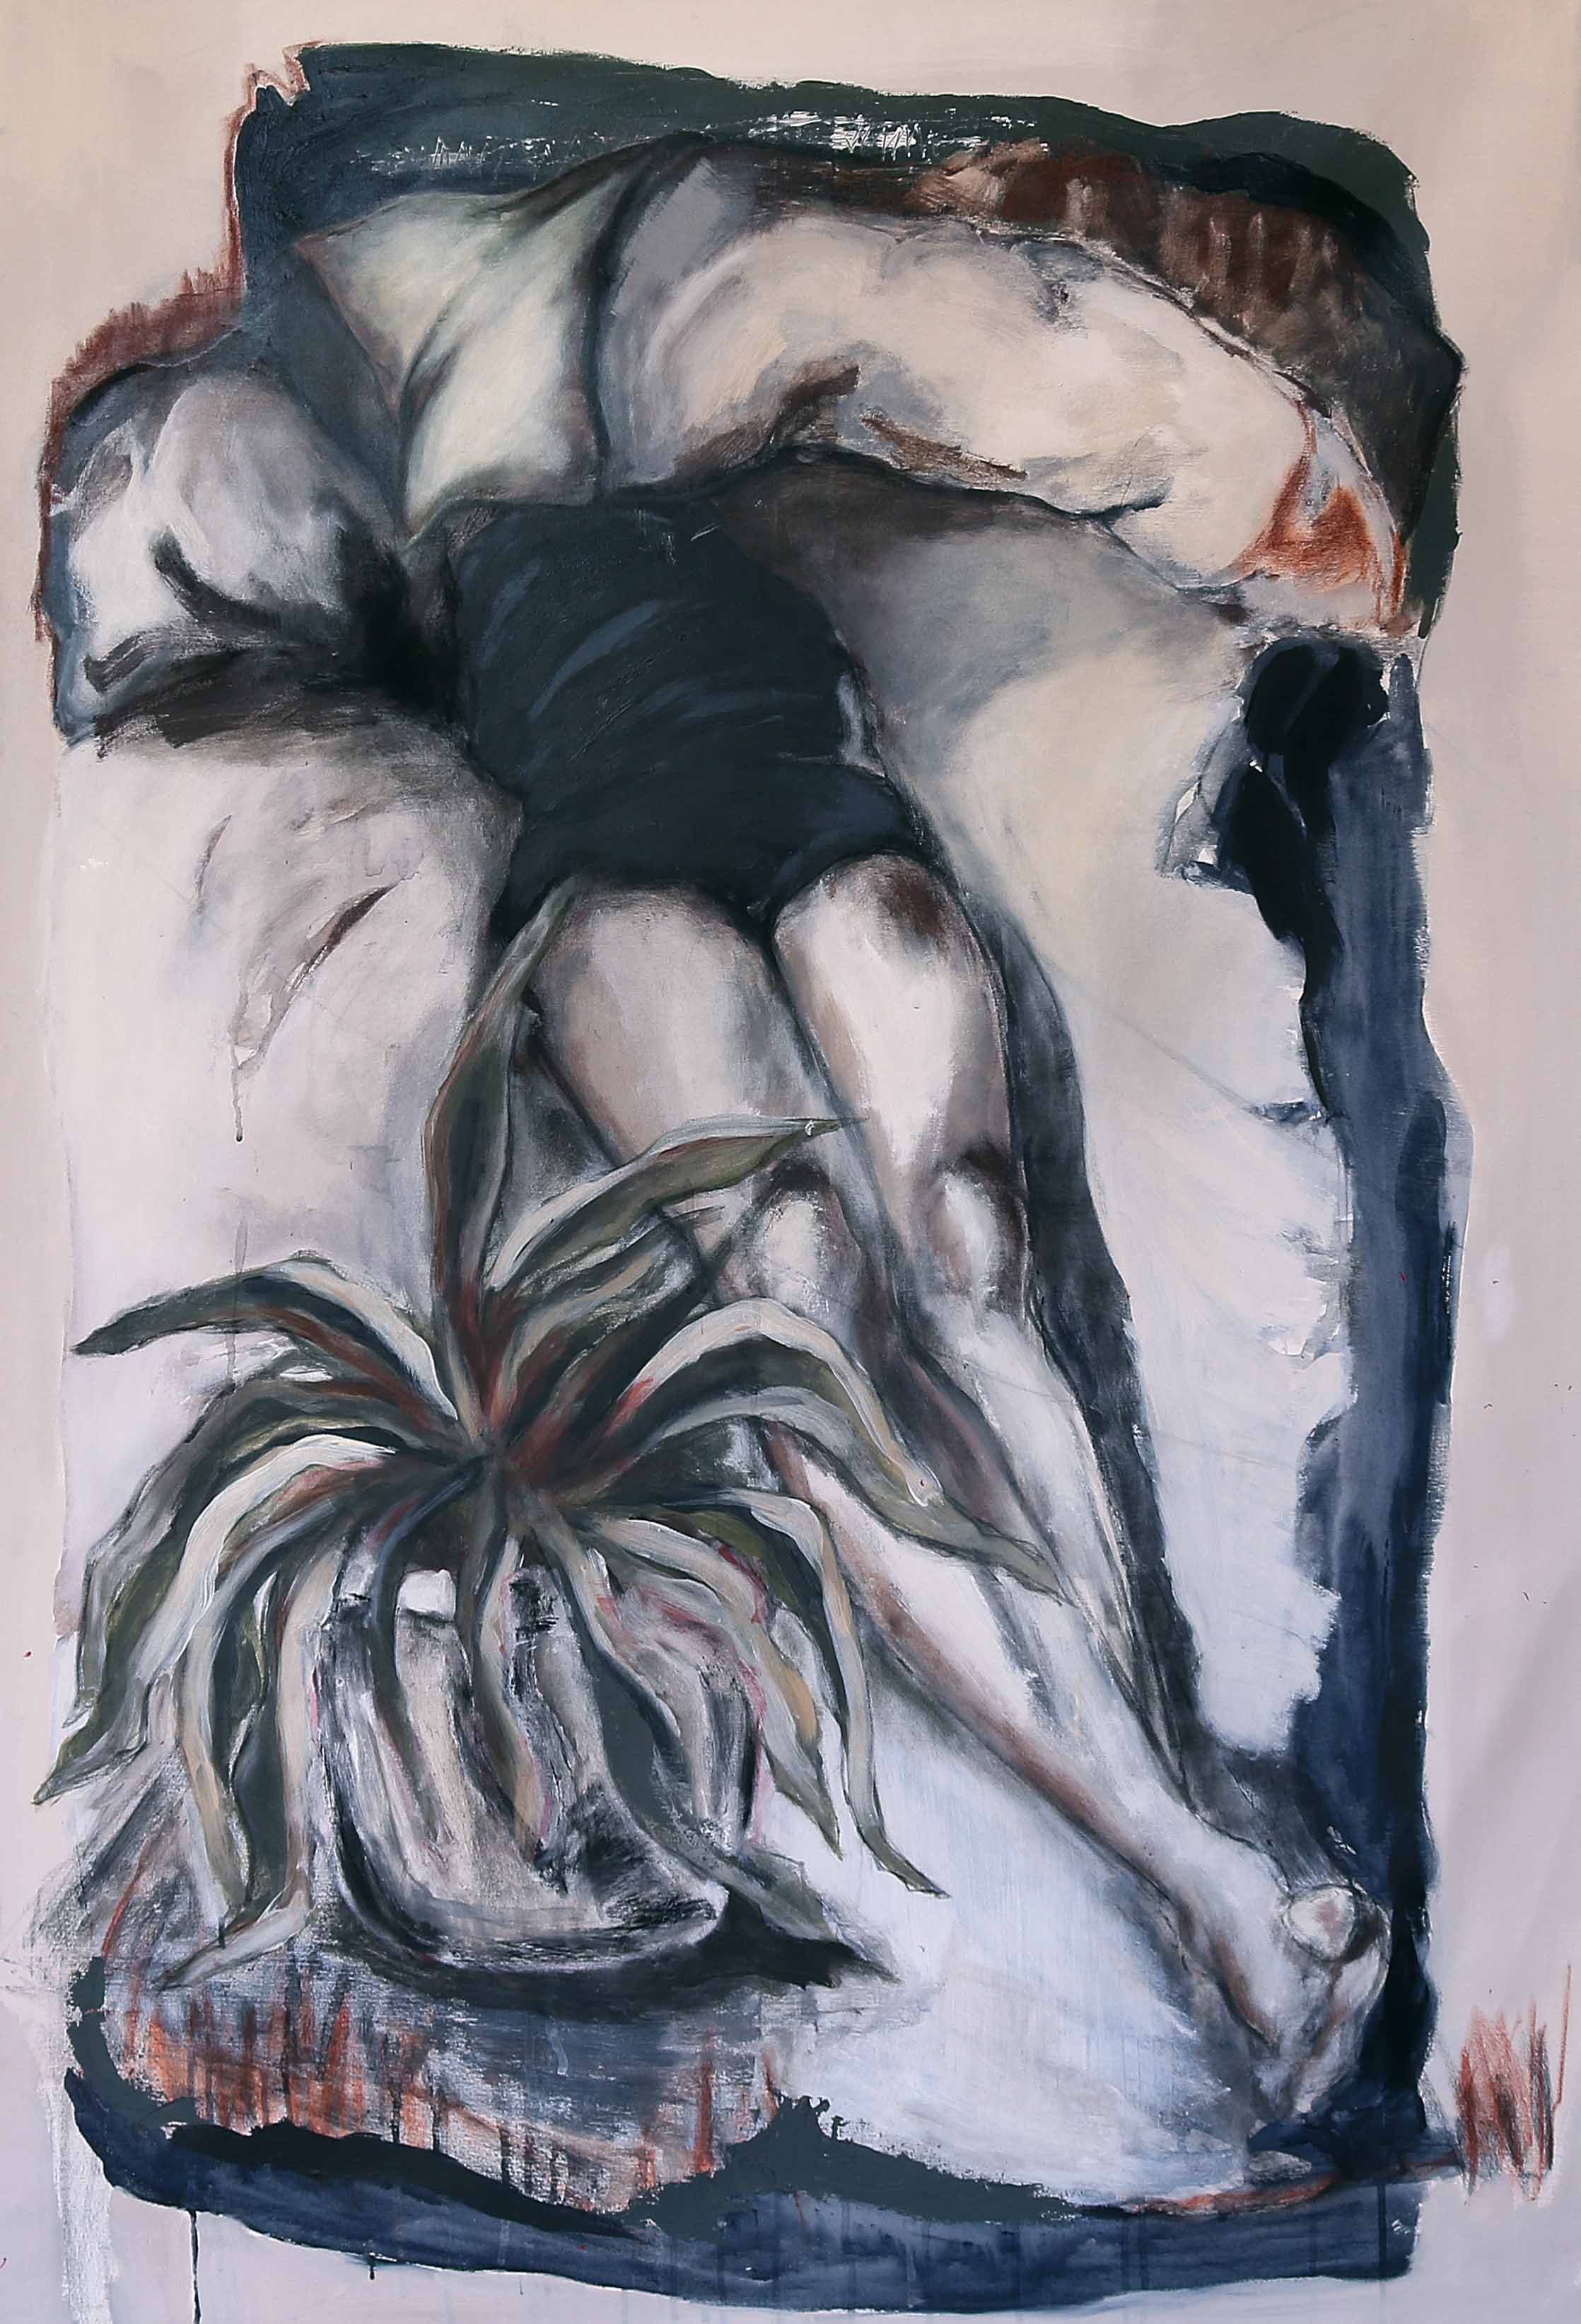  Sleeping Girl, 2016, Acrylic paint on canvas, 150 x 100 cm. 